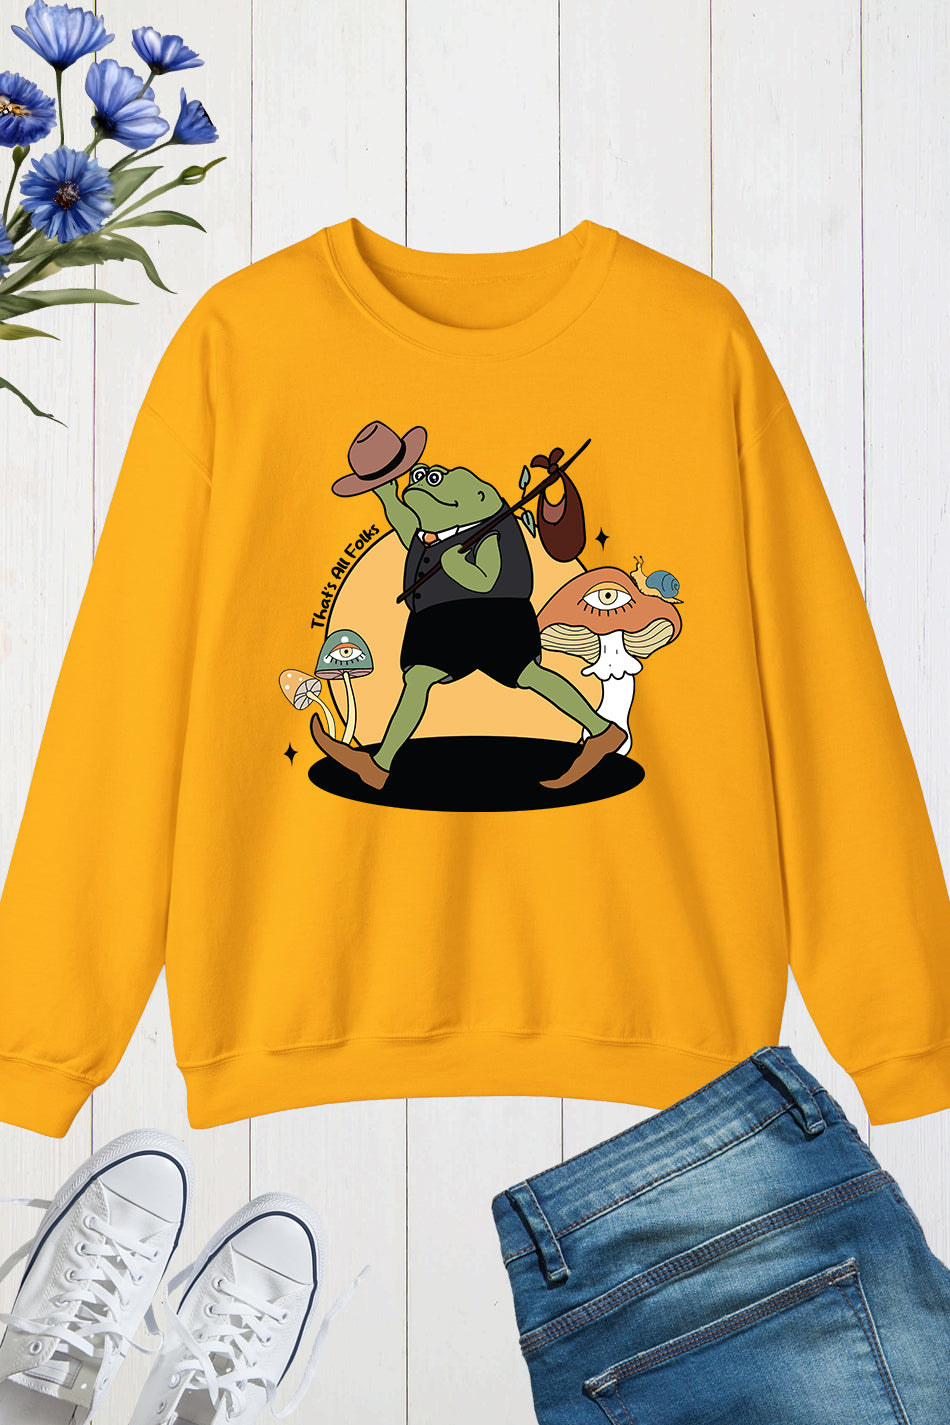 That's All Folks Retro Frog Sweatshirt